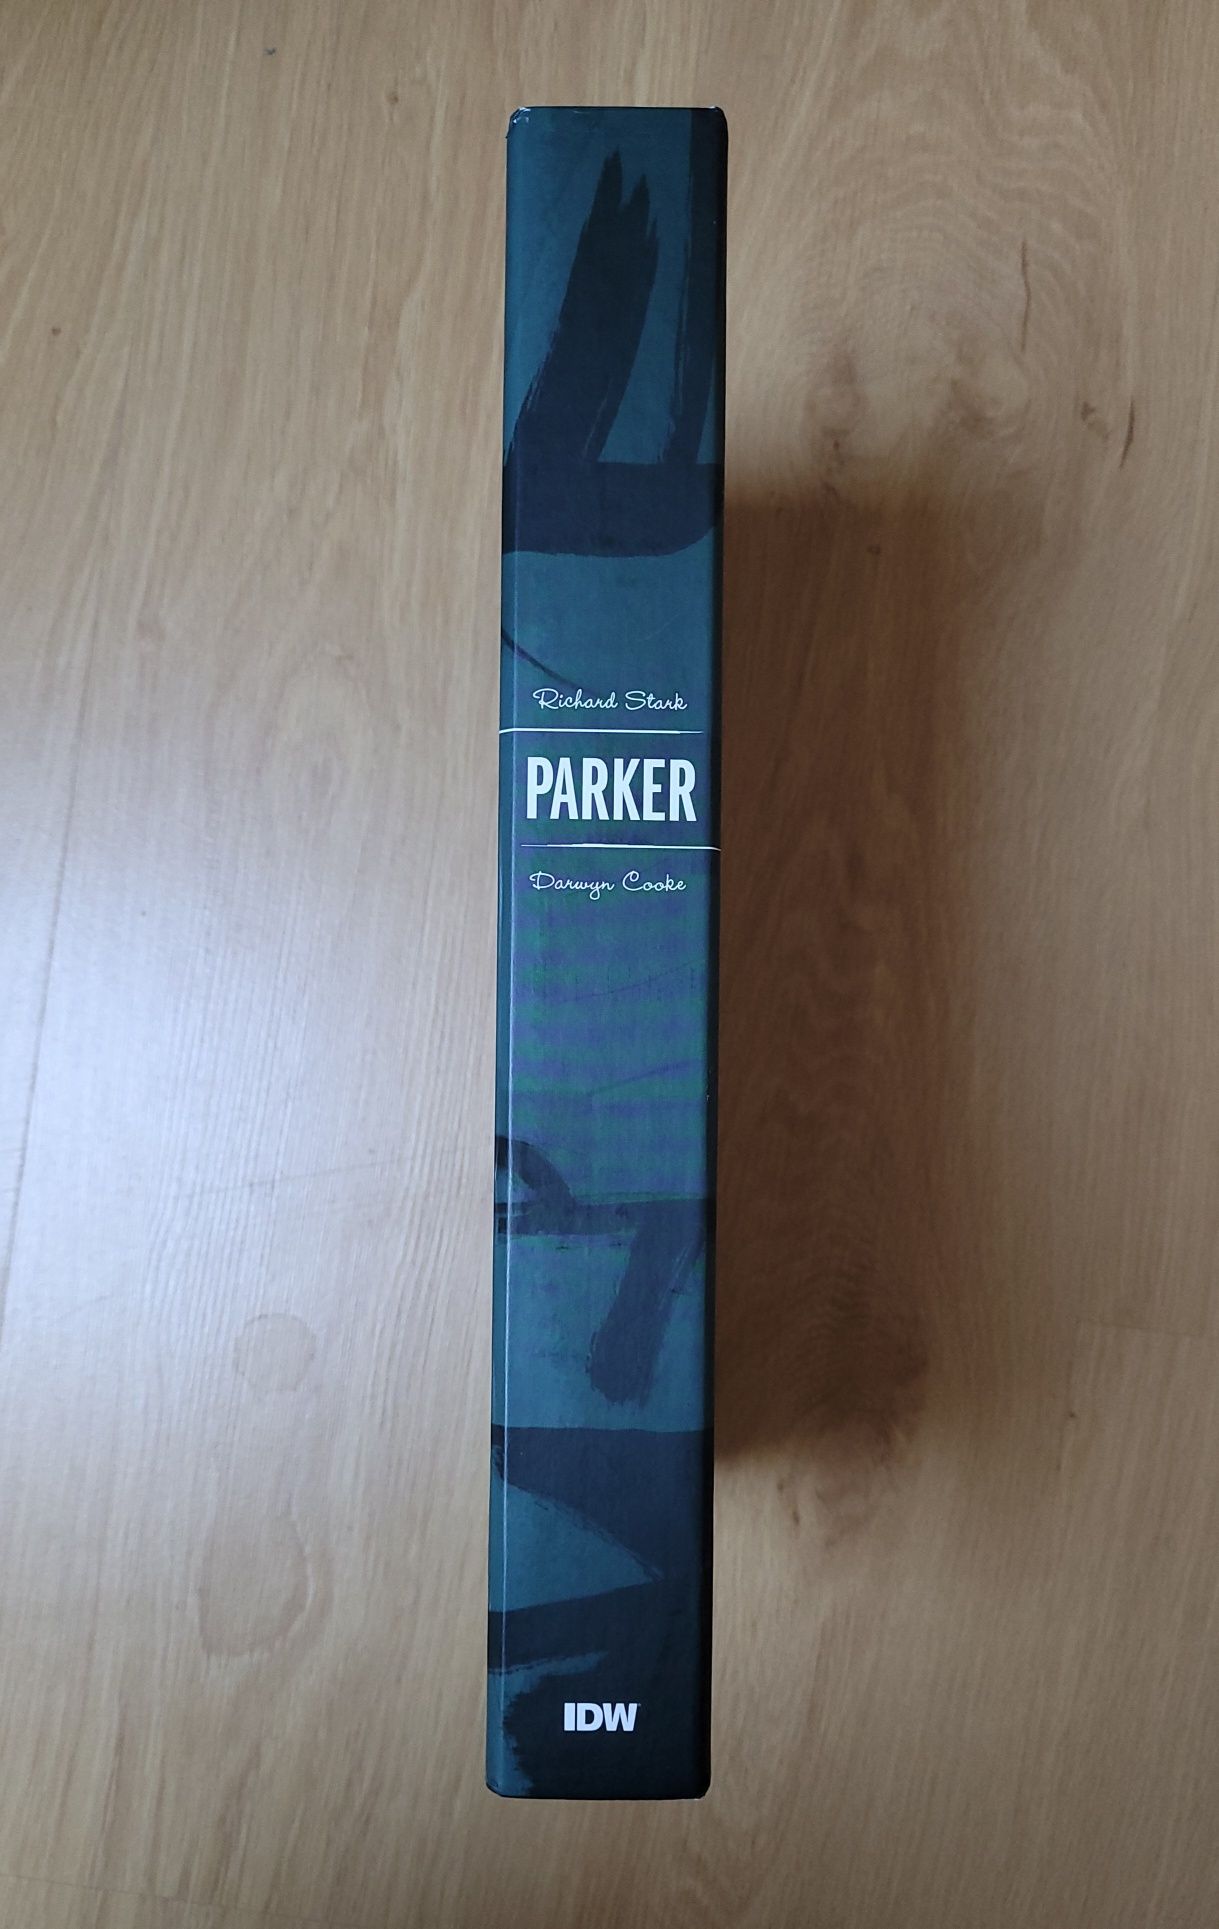 Richard Stark Parker Darwyn Cooke Martini Edition